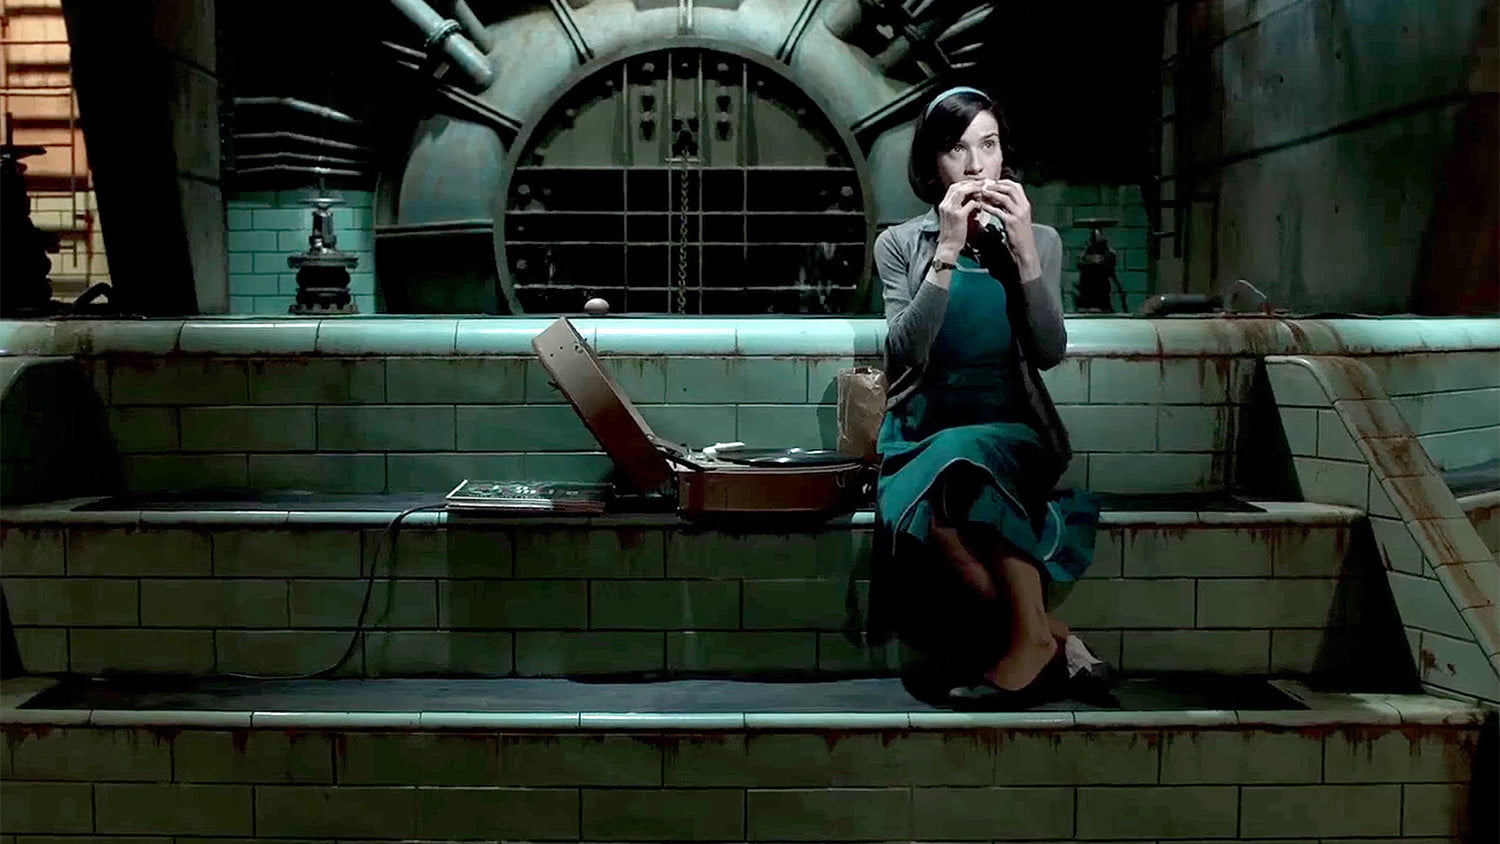 A Torino anteprima gratuita di The Shape of Water, il film di Guillermo del Toro candidato a 13 Oscar